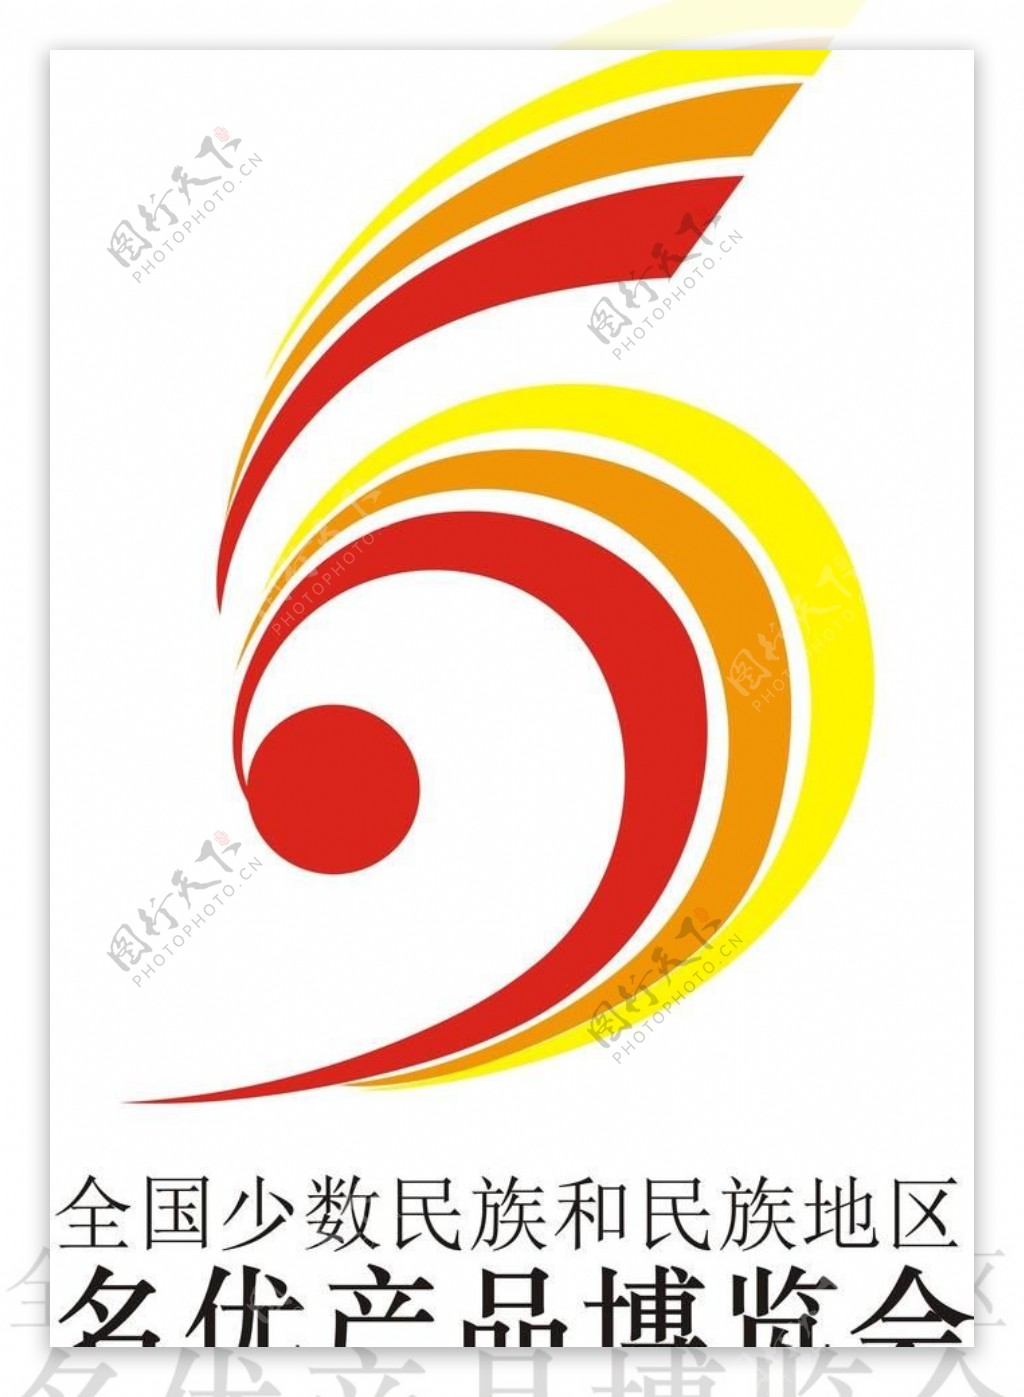 名优产品博览会logo图片